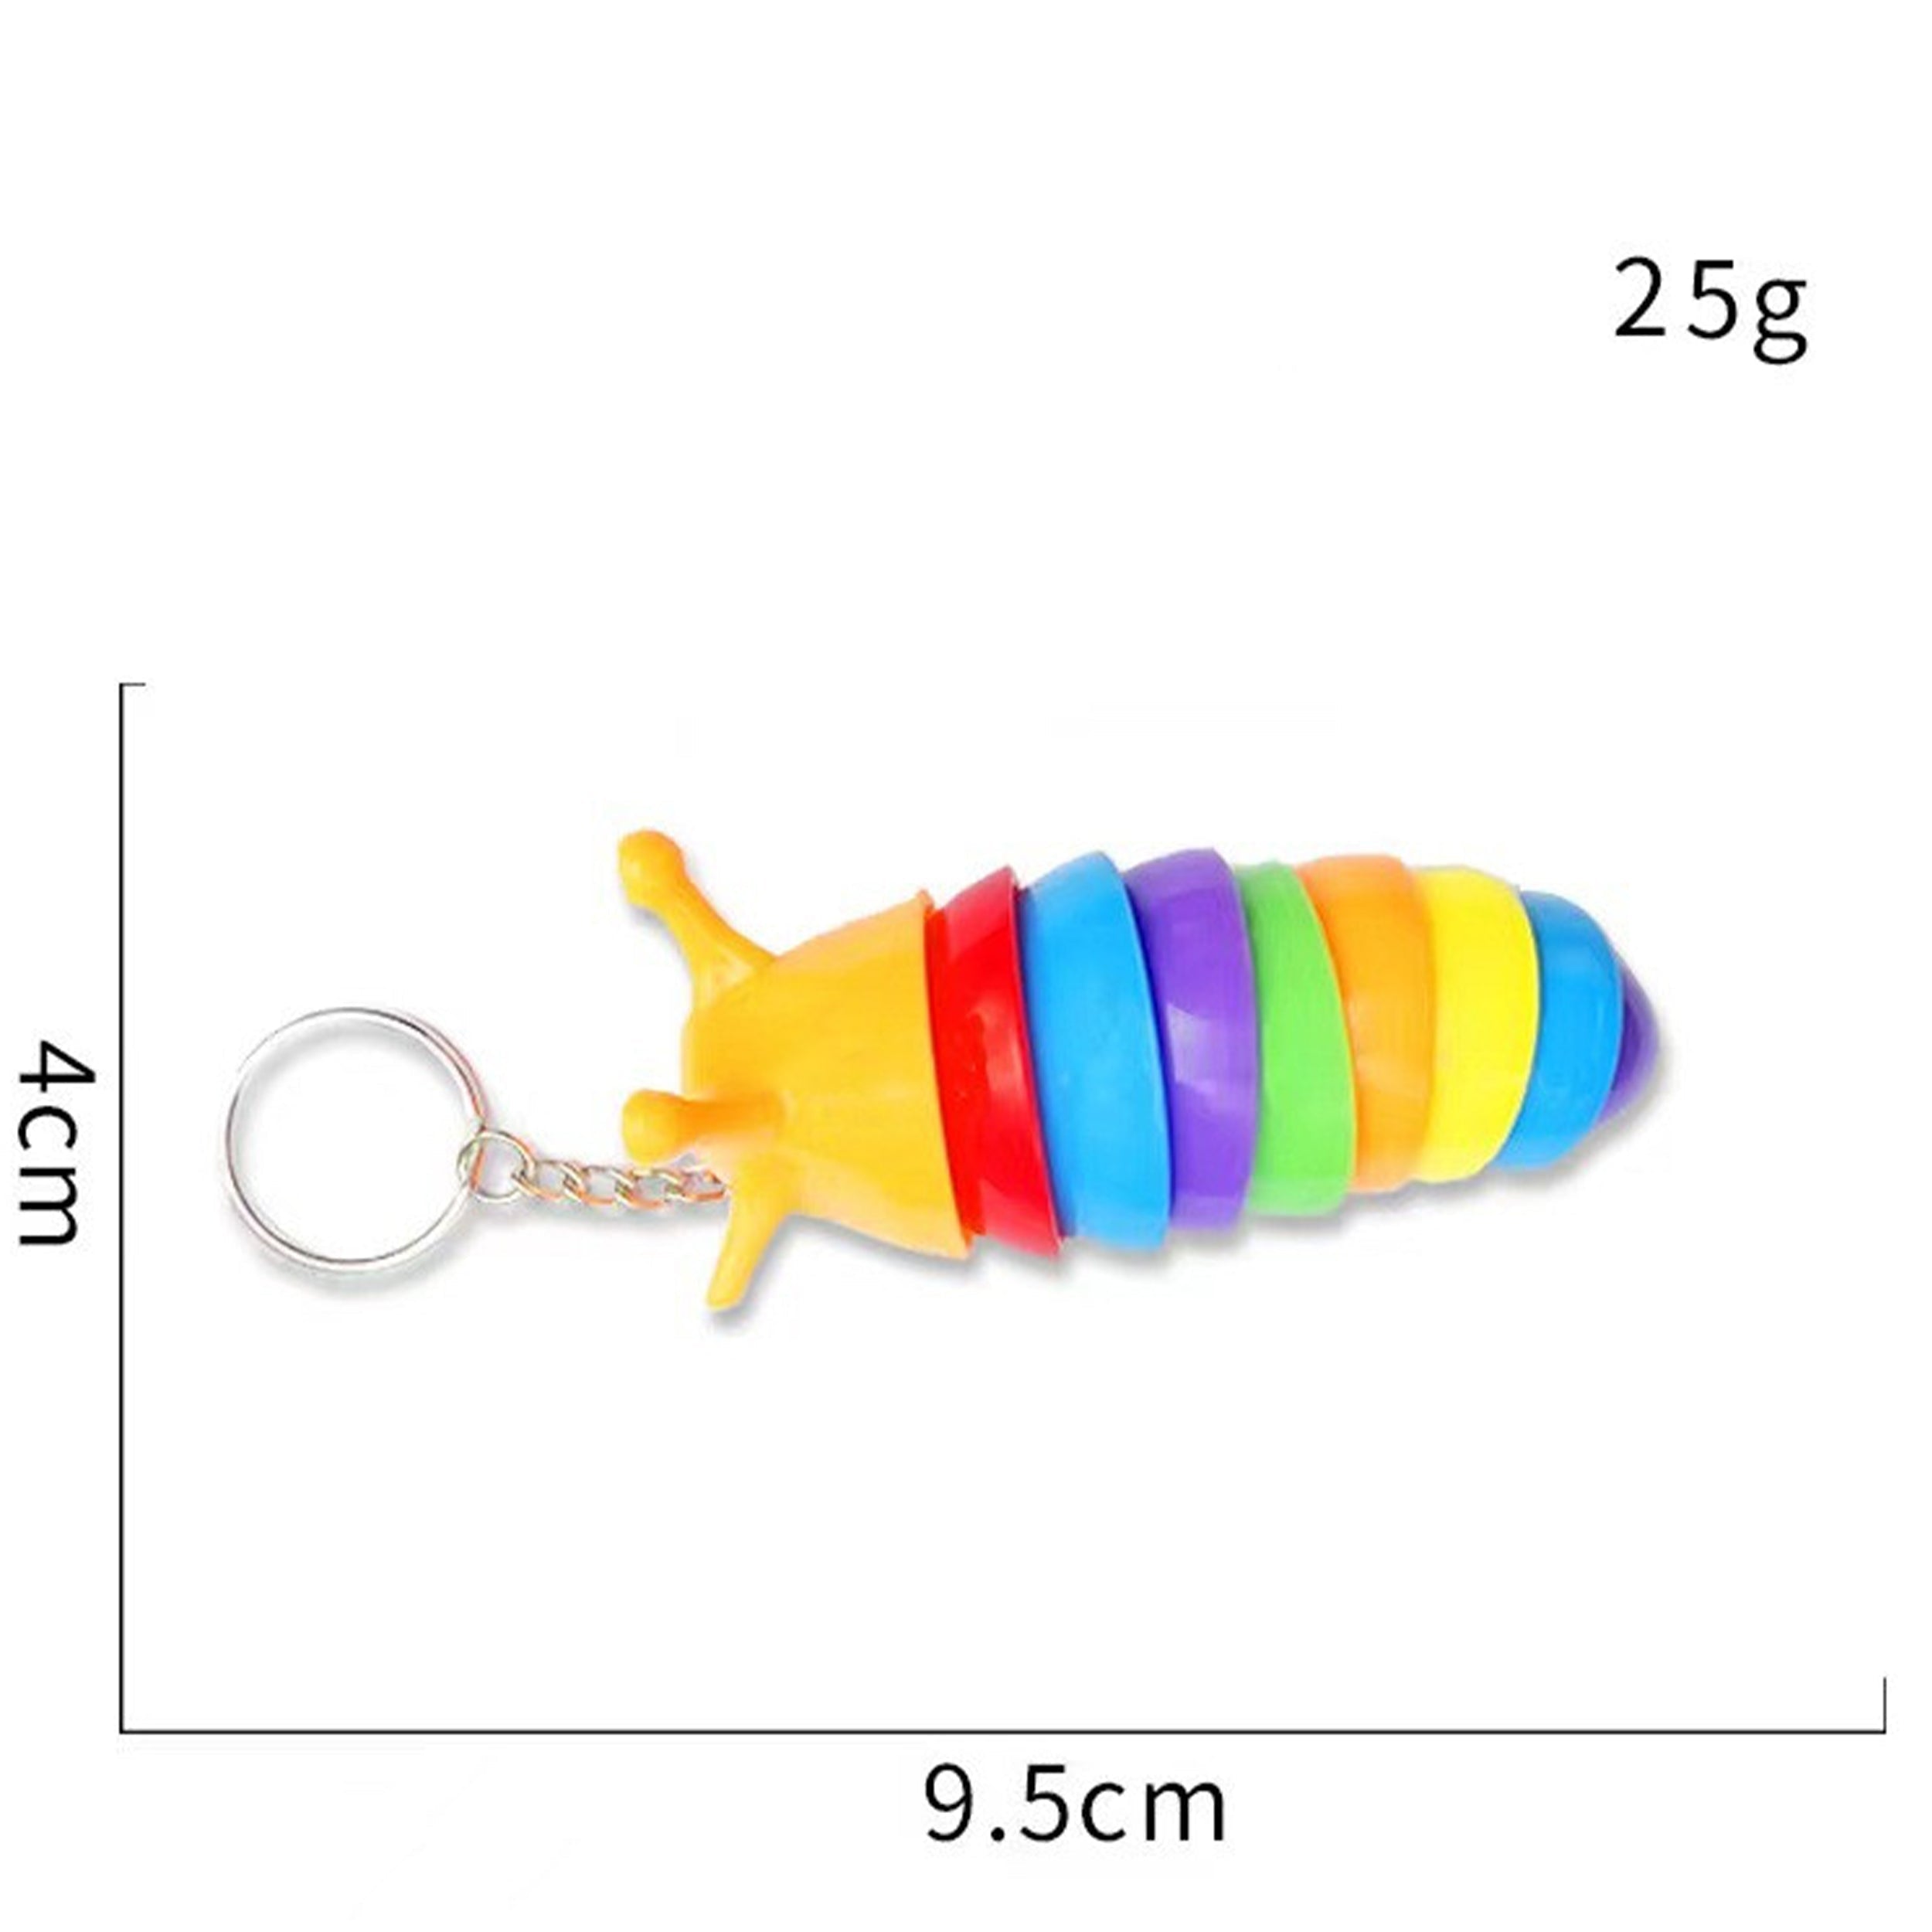 Dimensions Of Rainbow Slug Keychain Fidget Toy